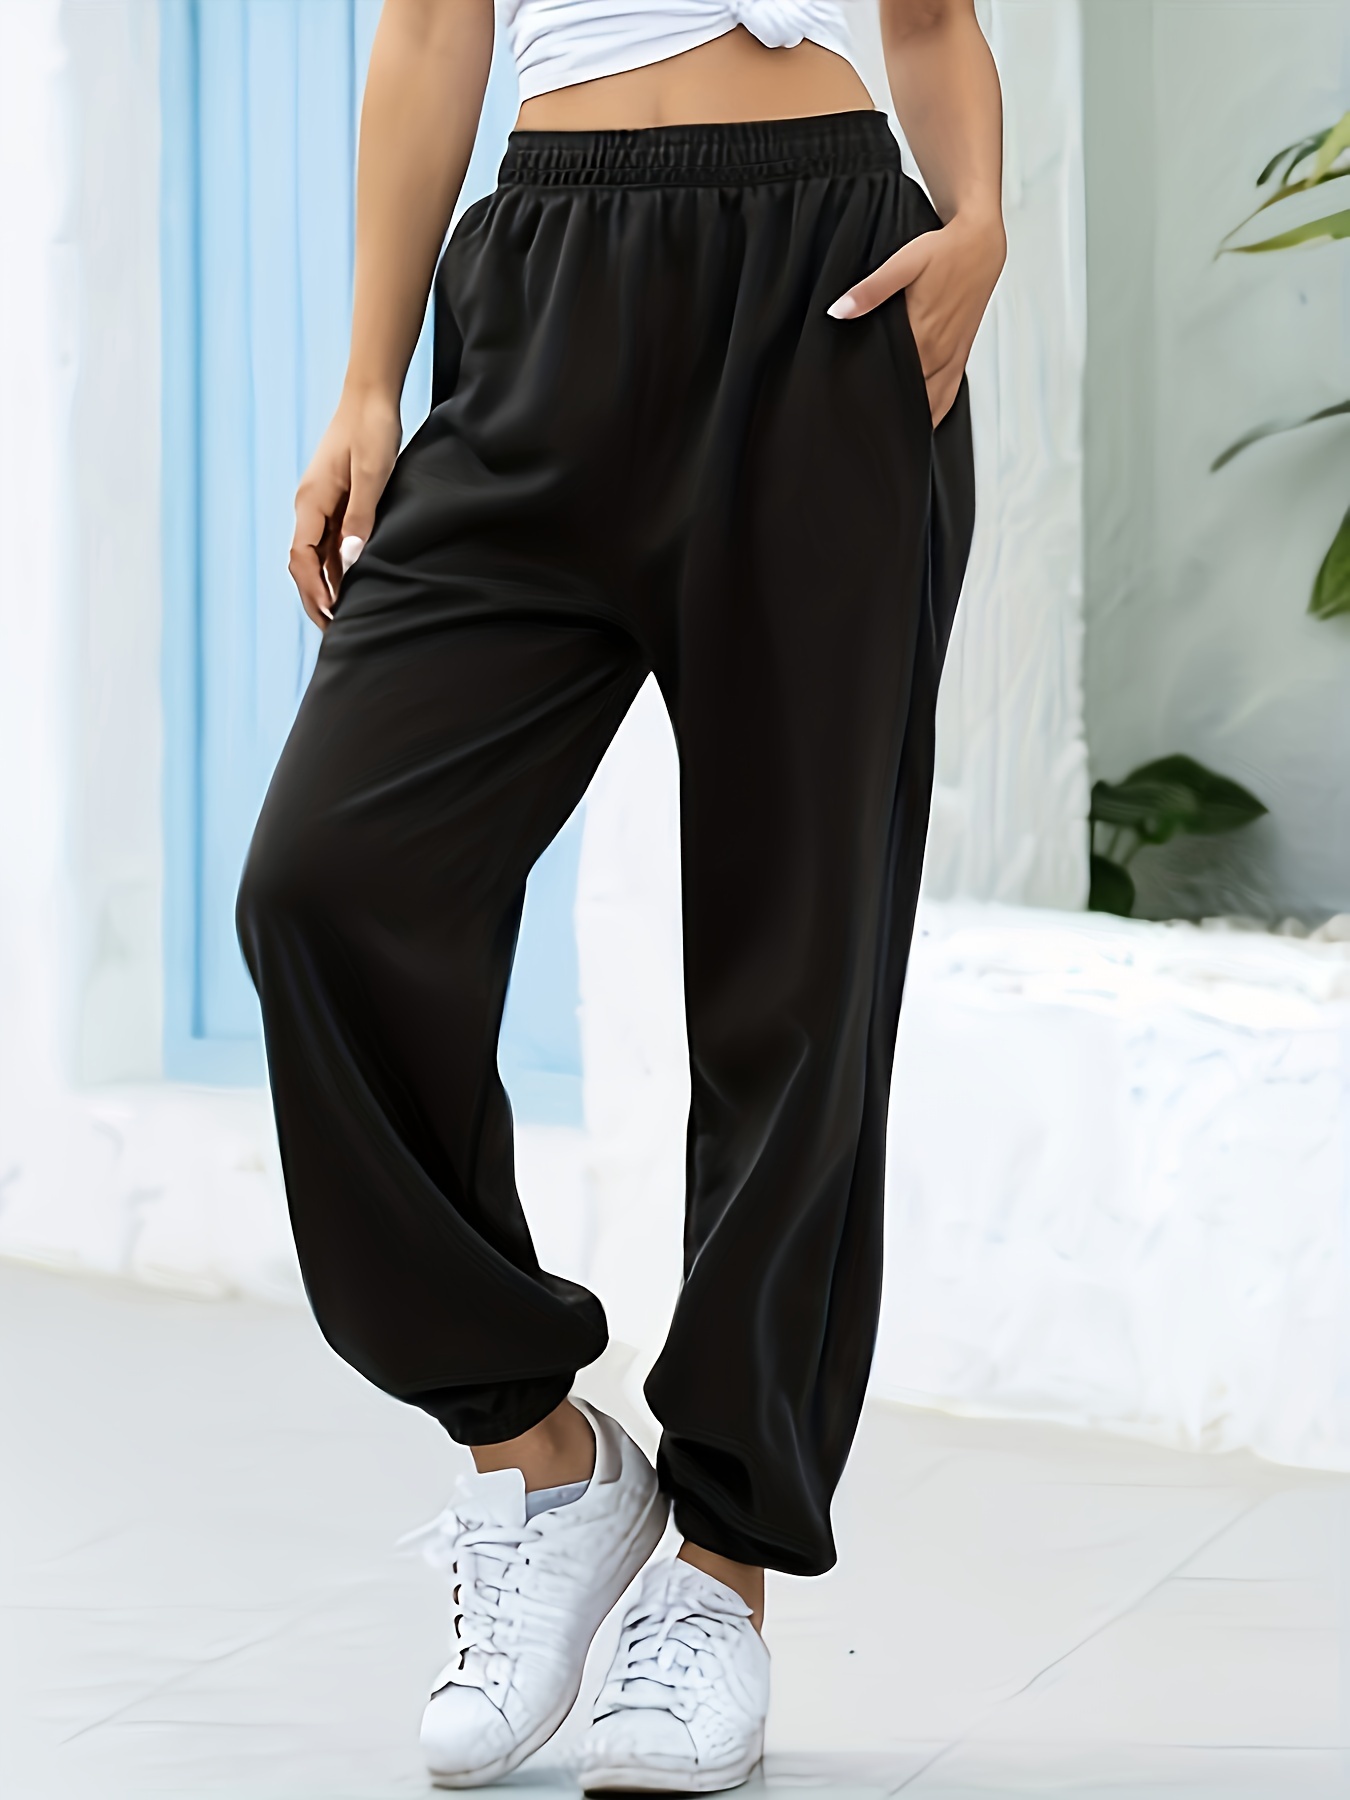 HSMQHJWE  Essentials Sweatpants Dress Casual Pants For Women